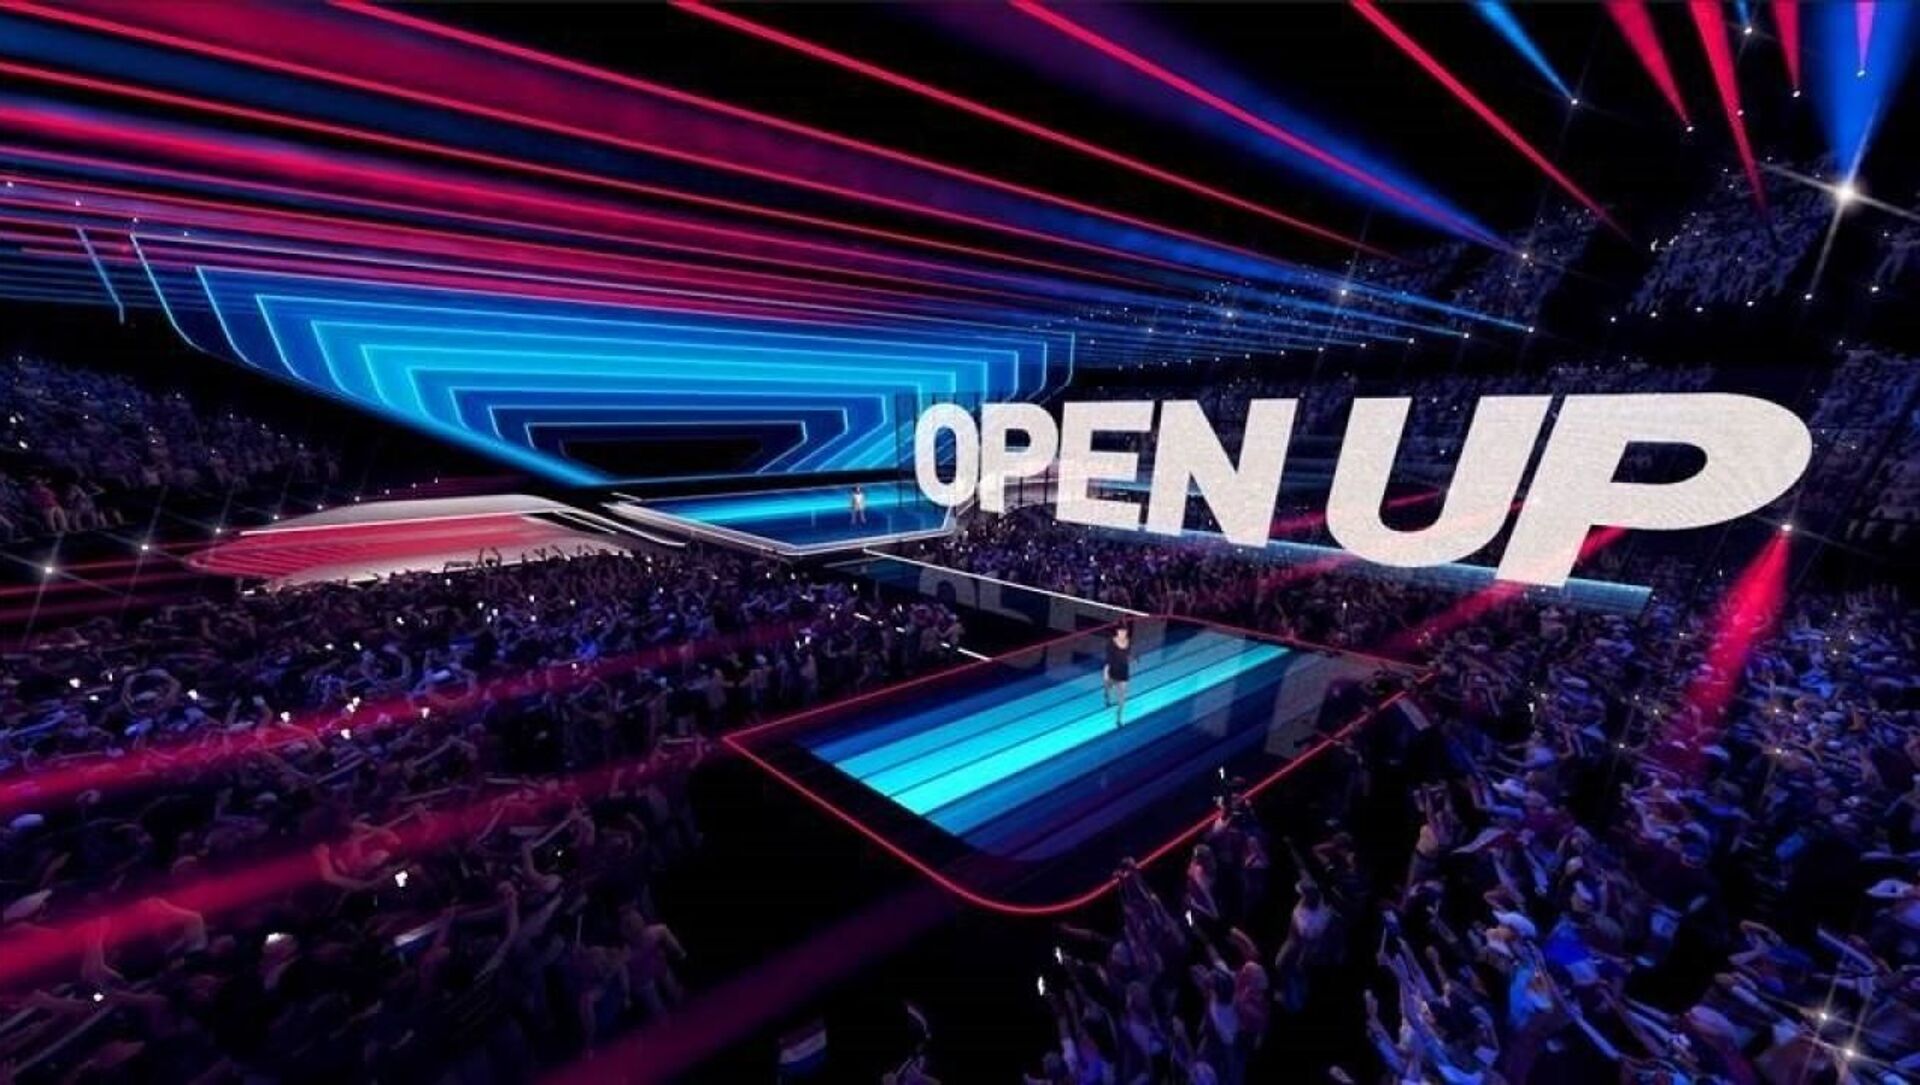 На сцене Евровидения в Роттердаме в 2021 году будет установлен полупрозрачный светодиодный экран - Sputnik Беларусь, 1920, 11.03.2021